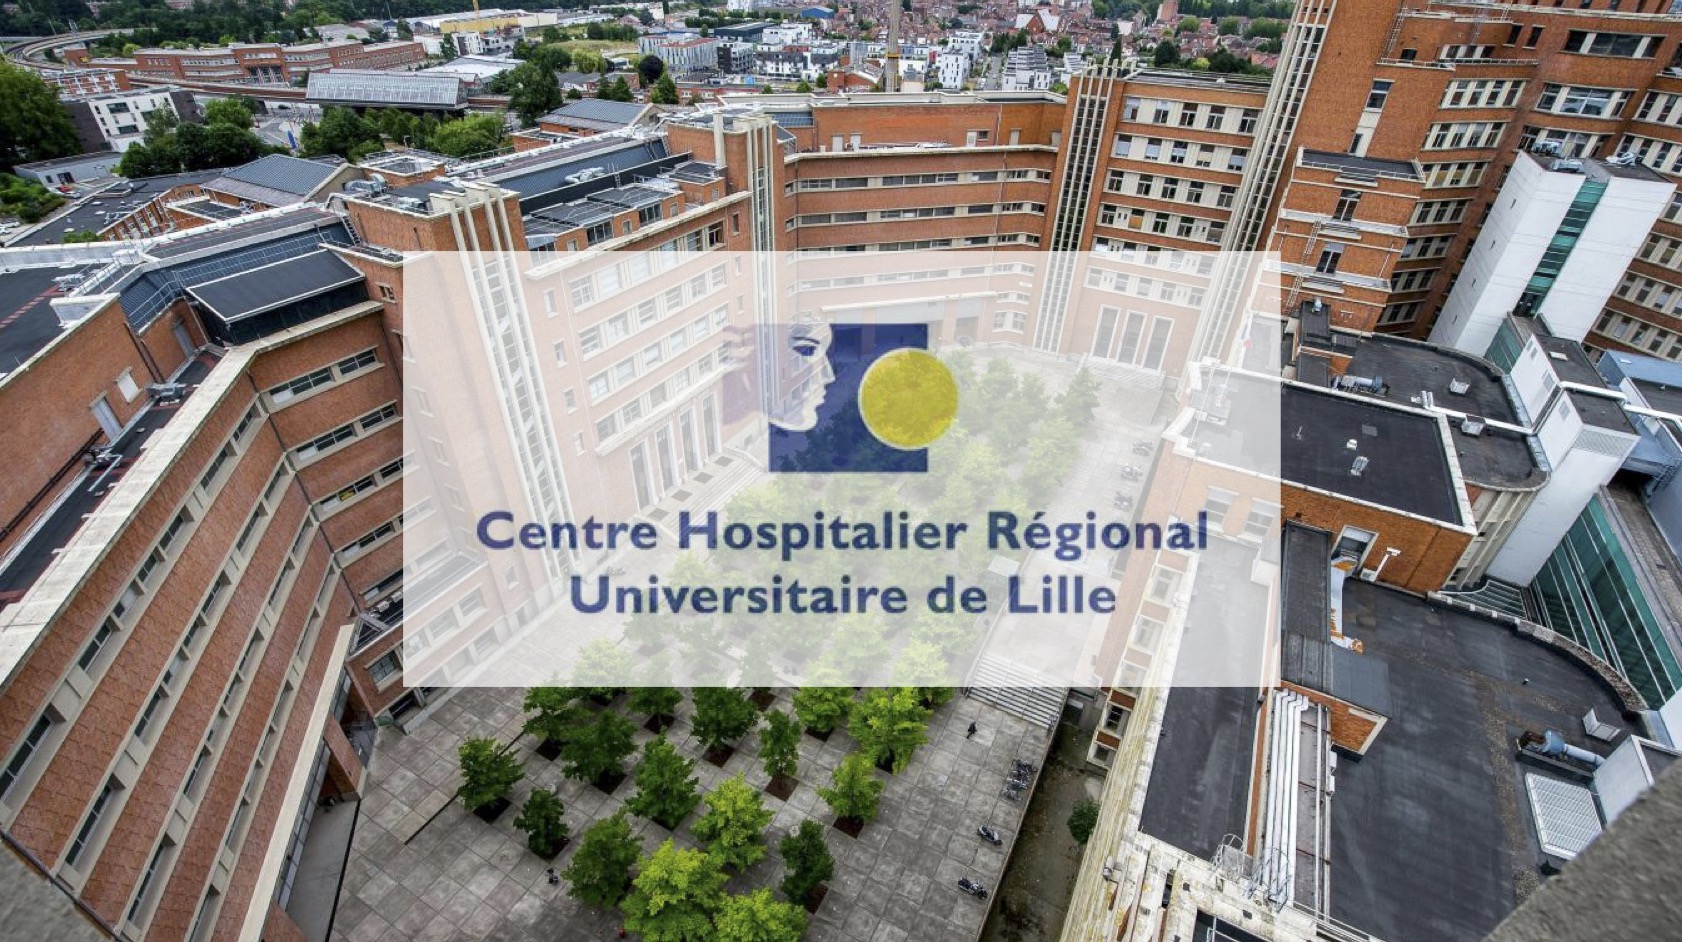 L'ospedale universitario di Lille utilizza una tecnologia ultra innovativa: il sequenziatore ad altissima velocità.